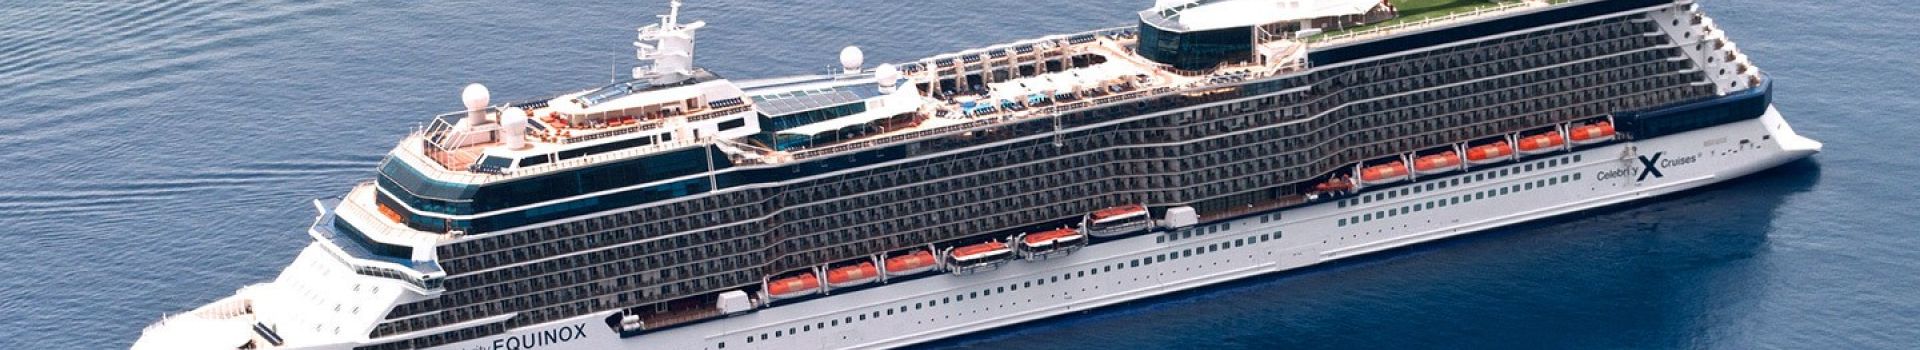 Celebrity Cruises Line Holidays